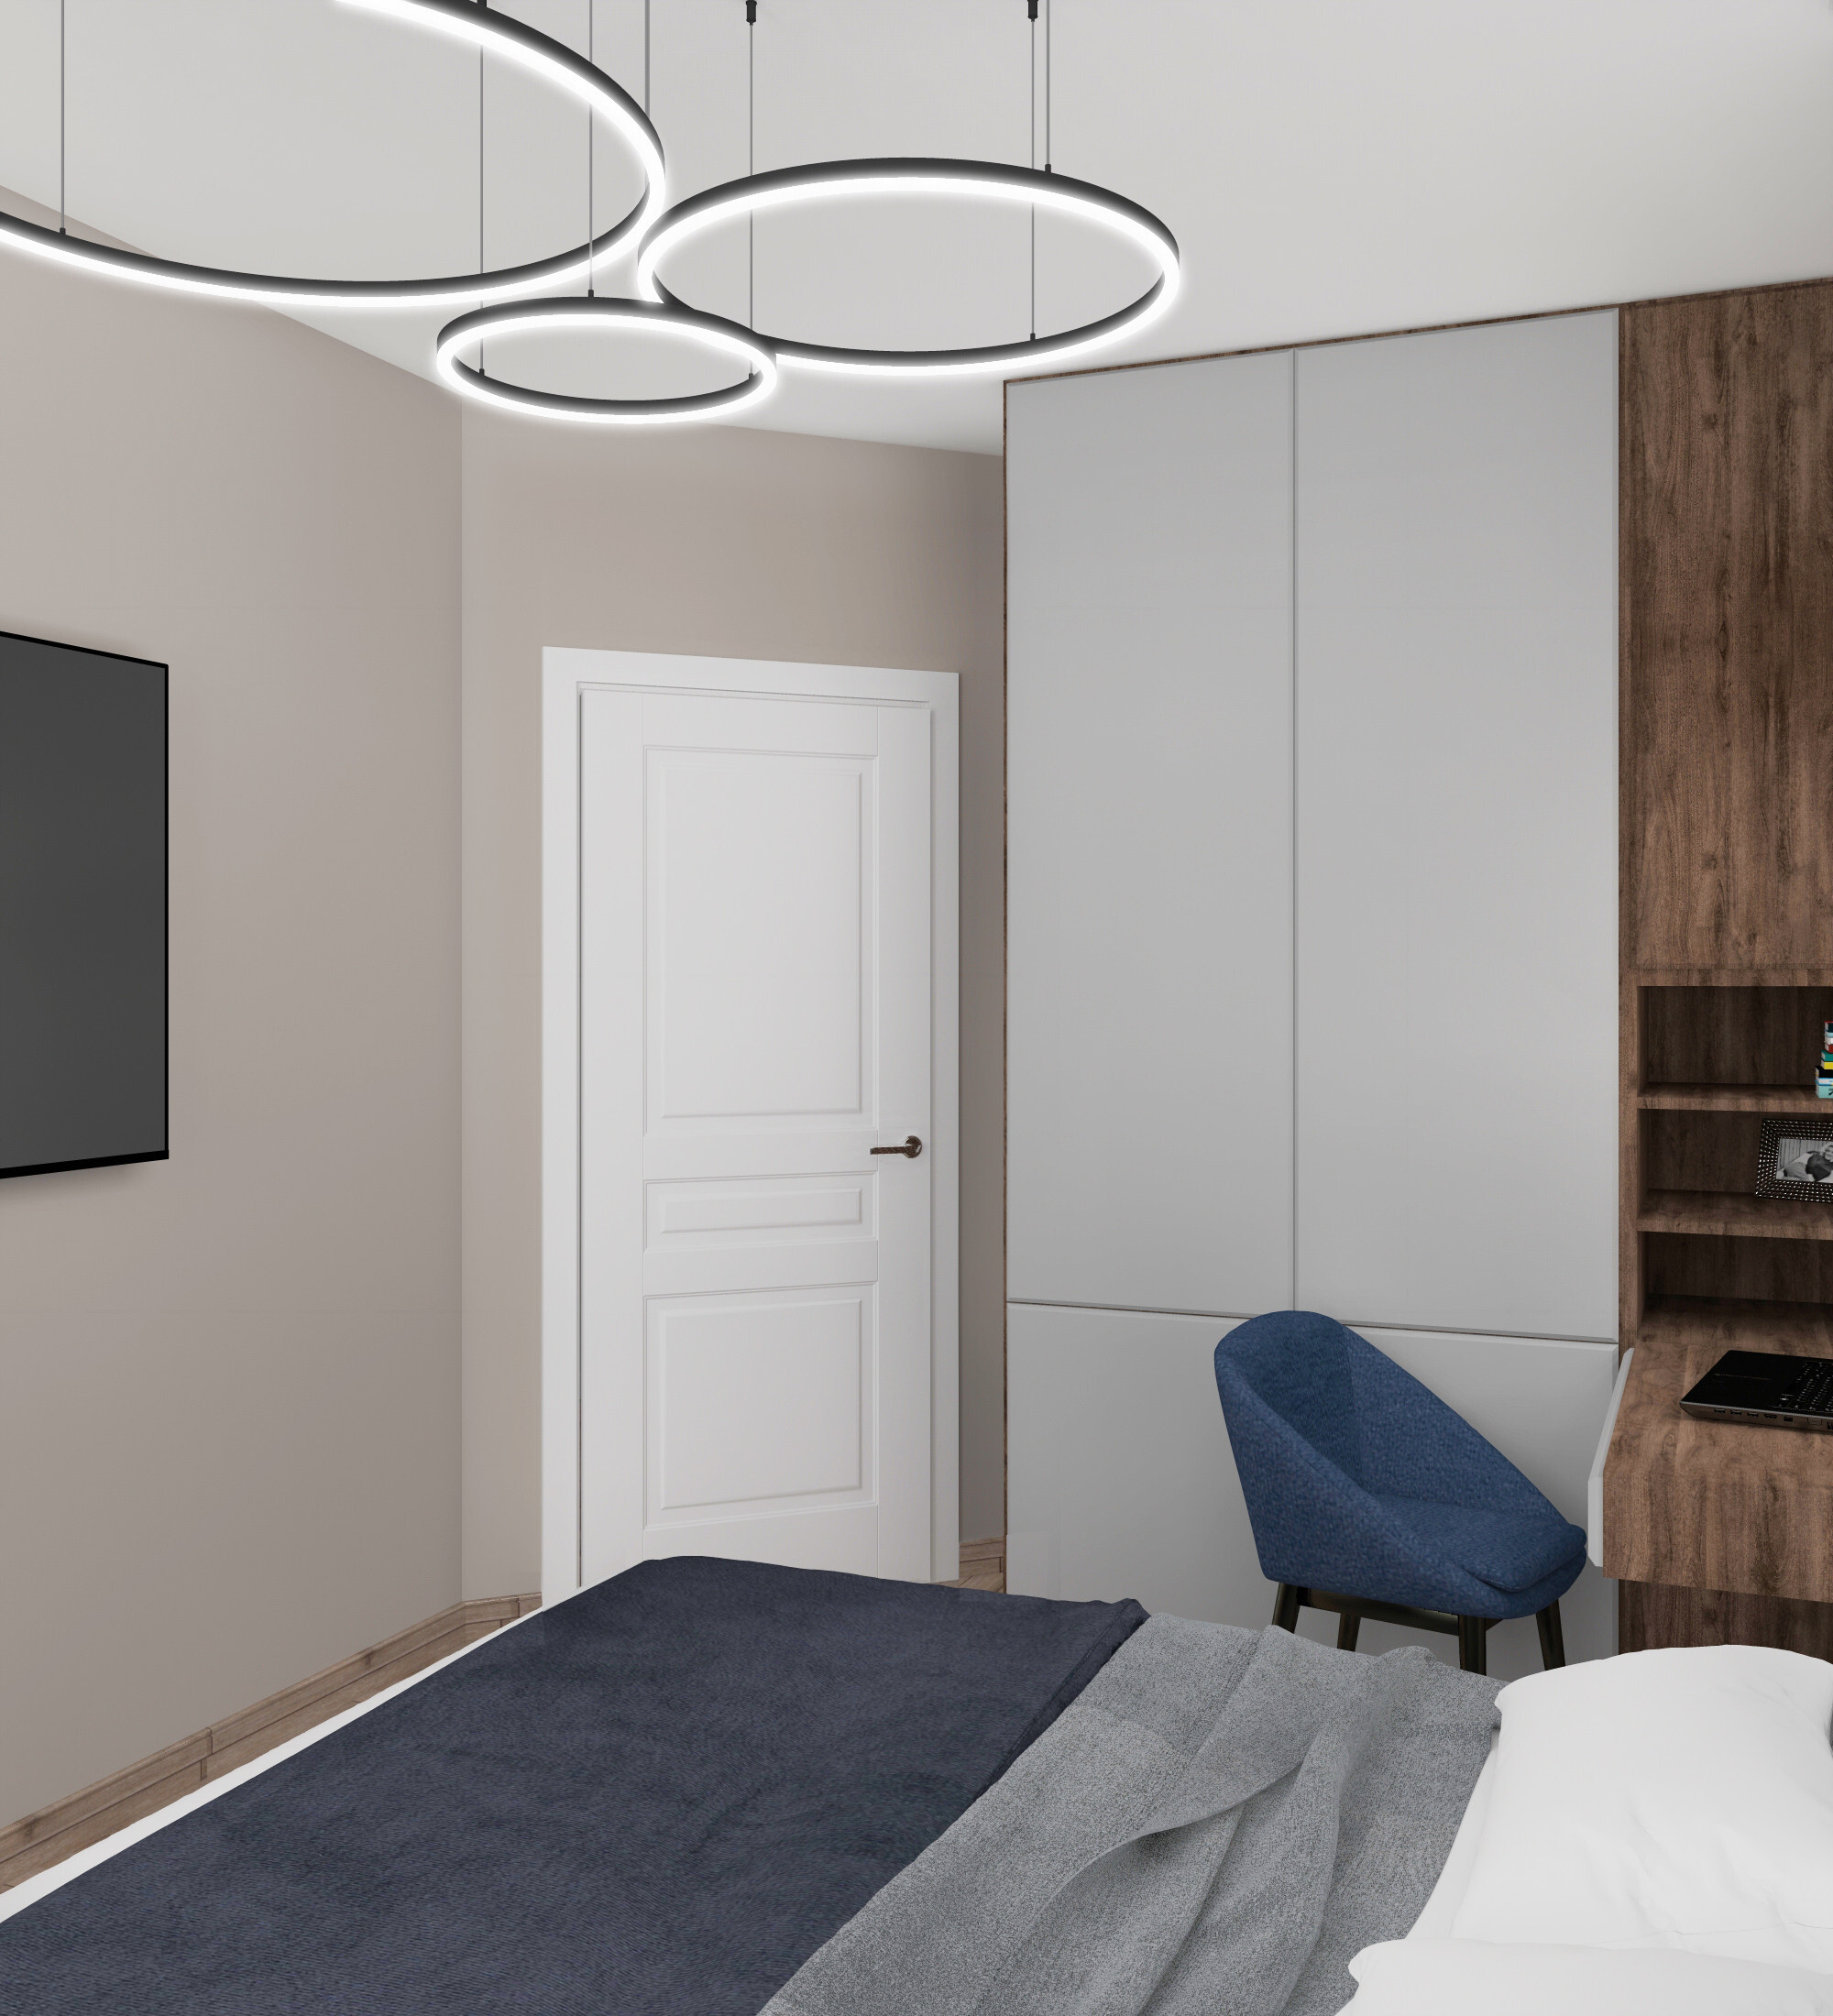 Интерьер спальни c рабочим местом, подсветкой светодиодной и светильниками над кроватью